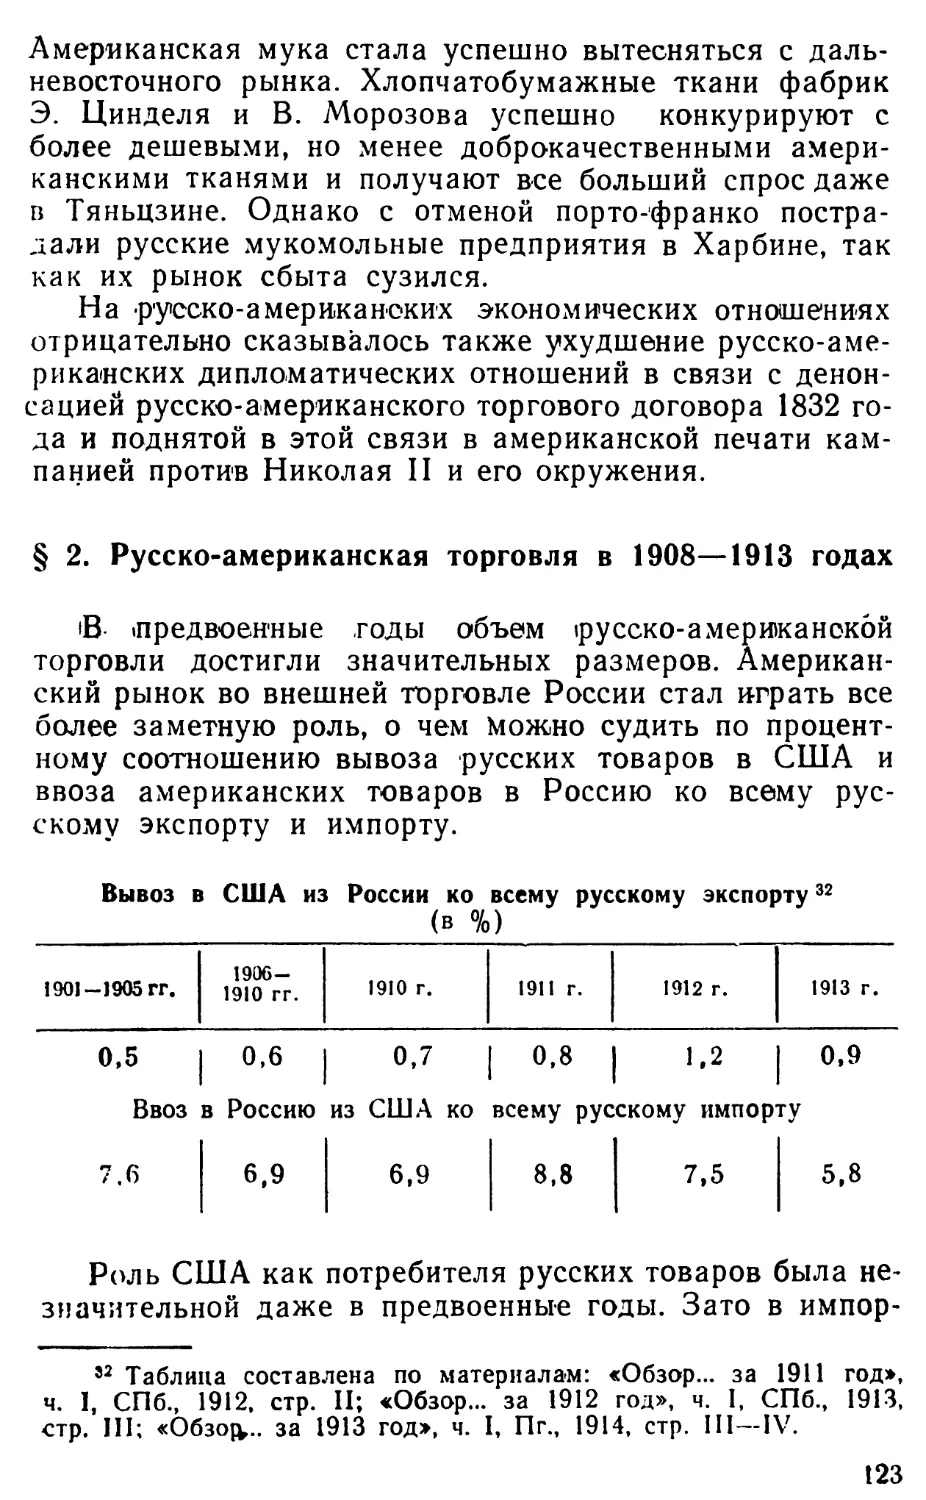 § 2. Русско-американская торговля в 1908—1913 годах